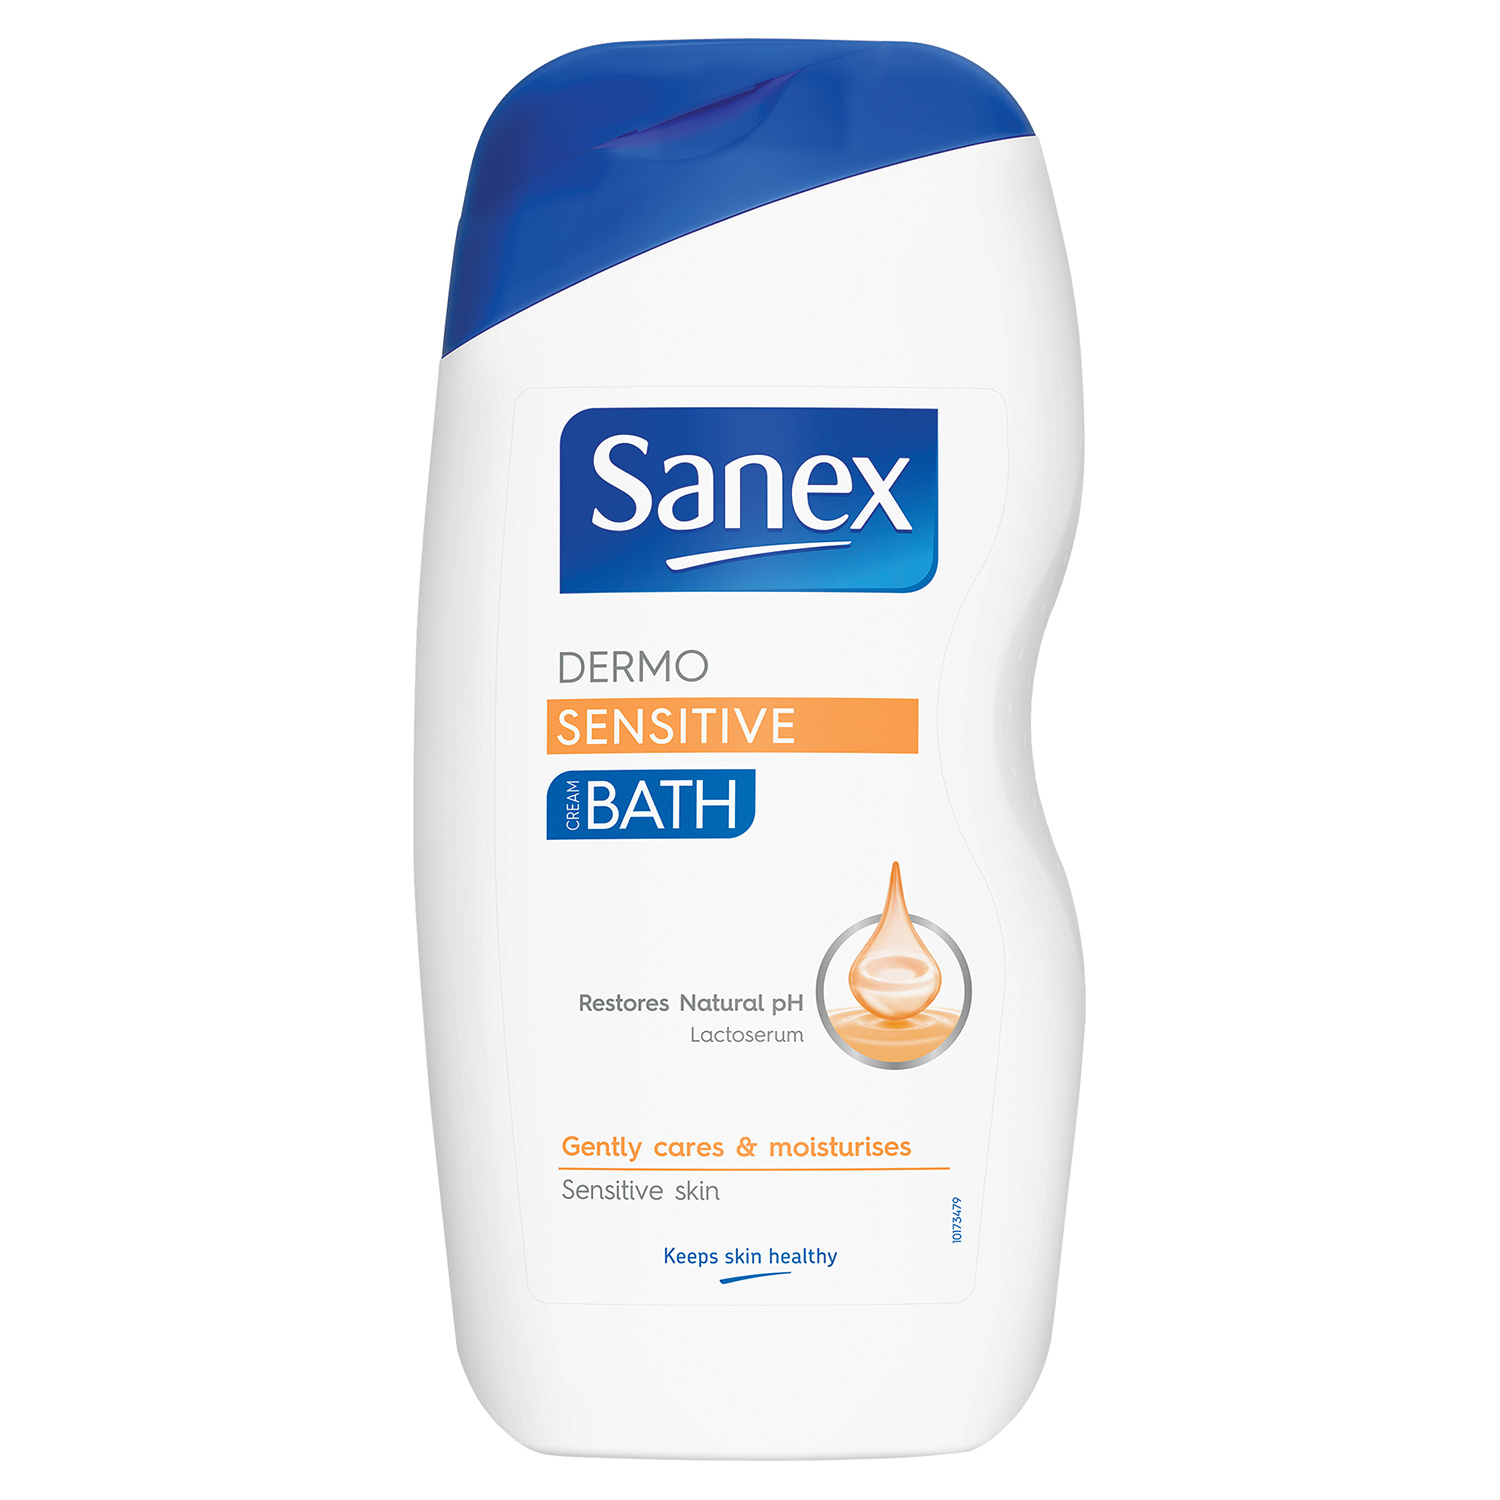 Sanex Dermo Sensitive Bath Foam